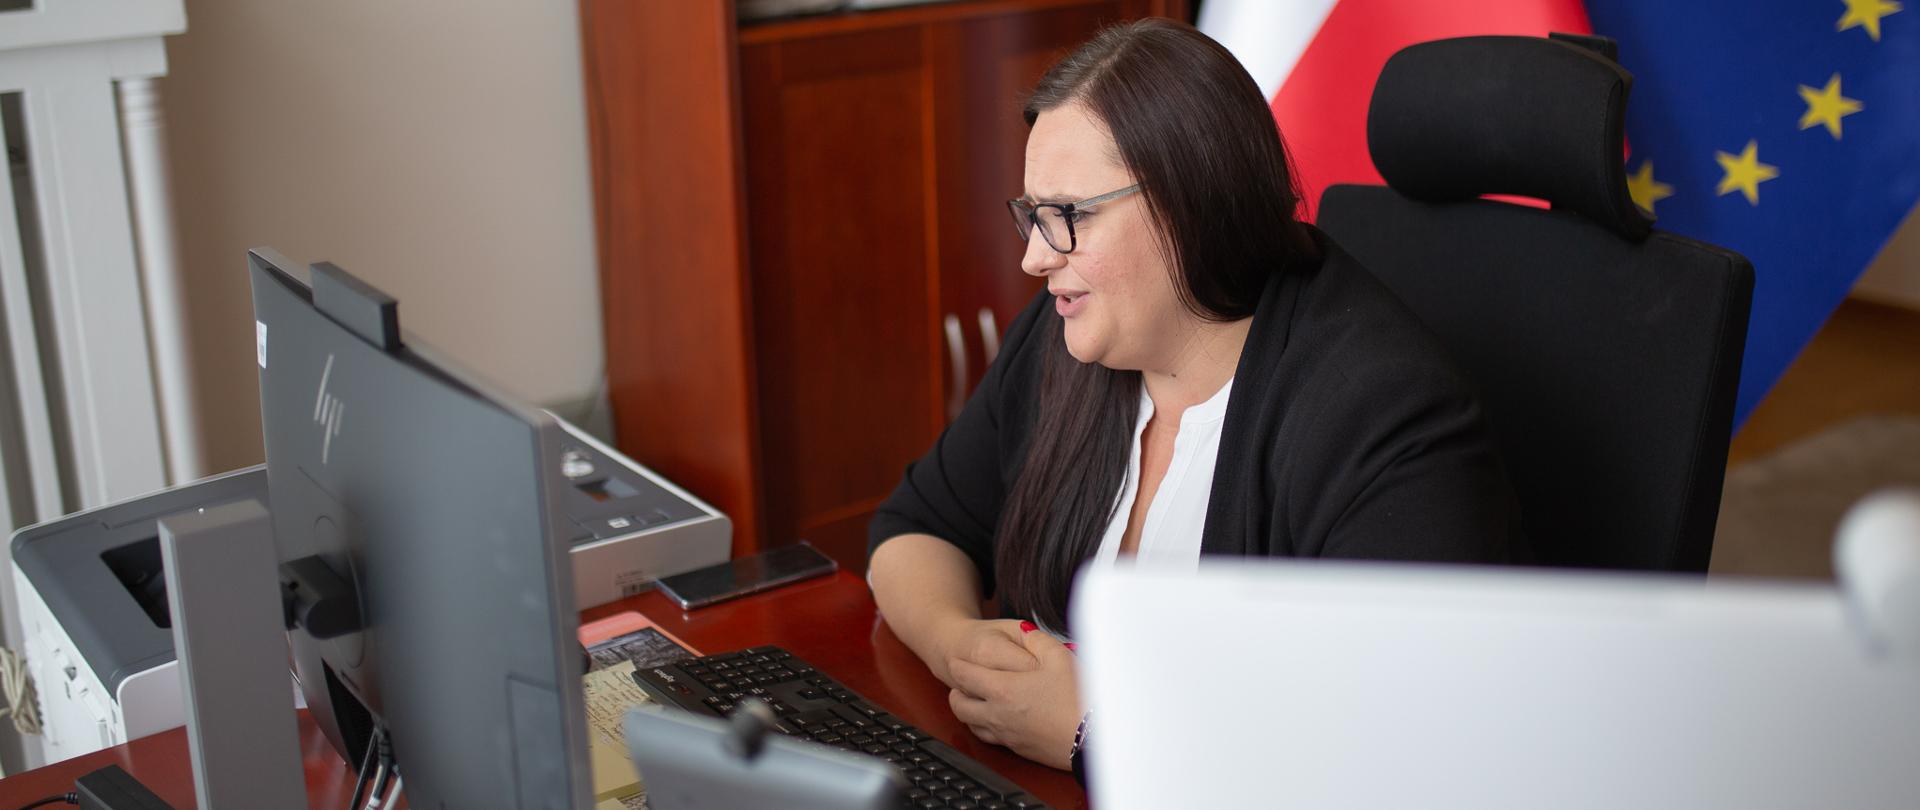 Minister Małgorzata Jarosińska-Jedynak w służbowym pokoju przy biurku prowadzi zdalną rozmowę przez komputer